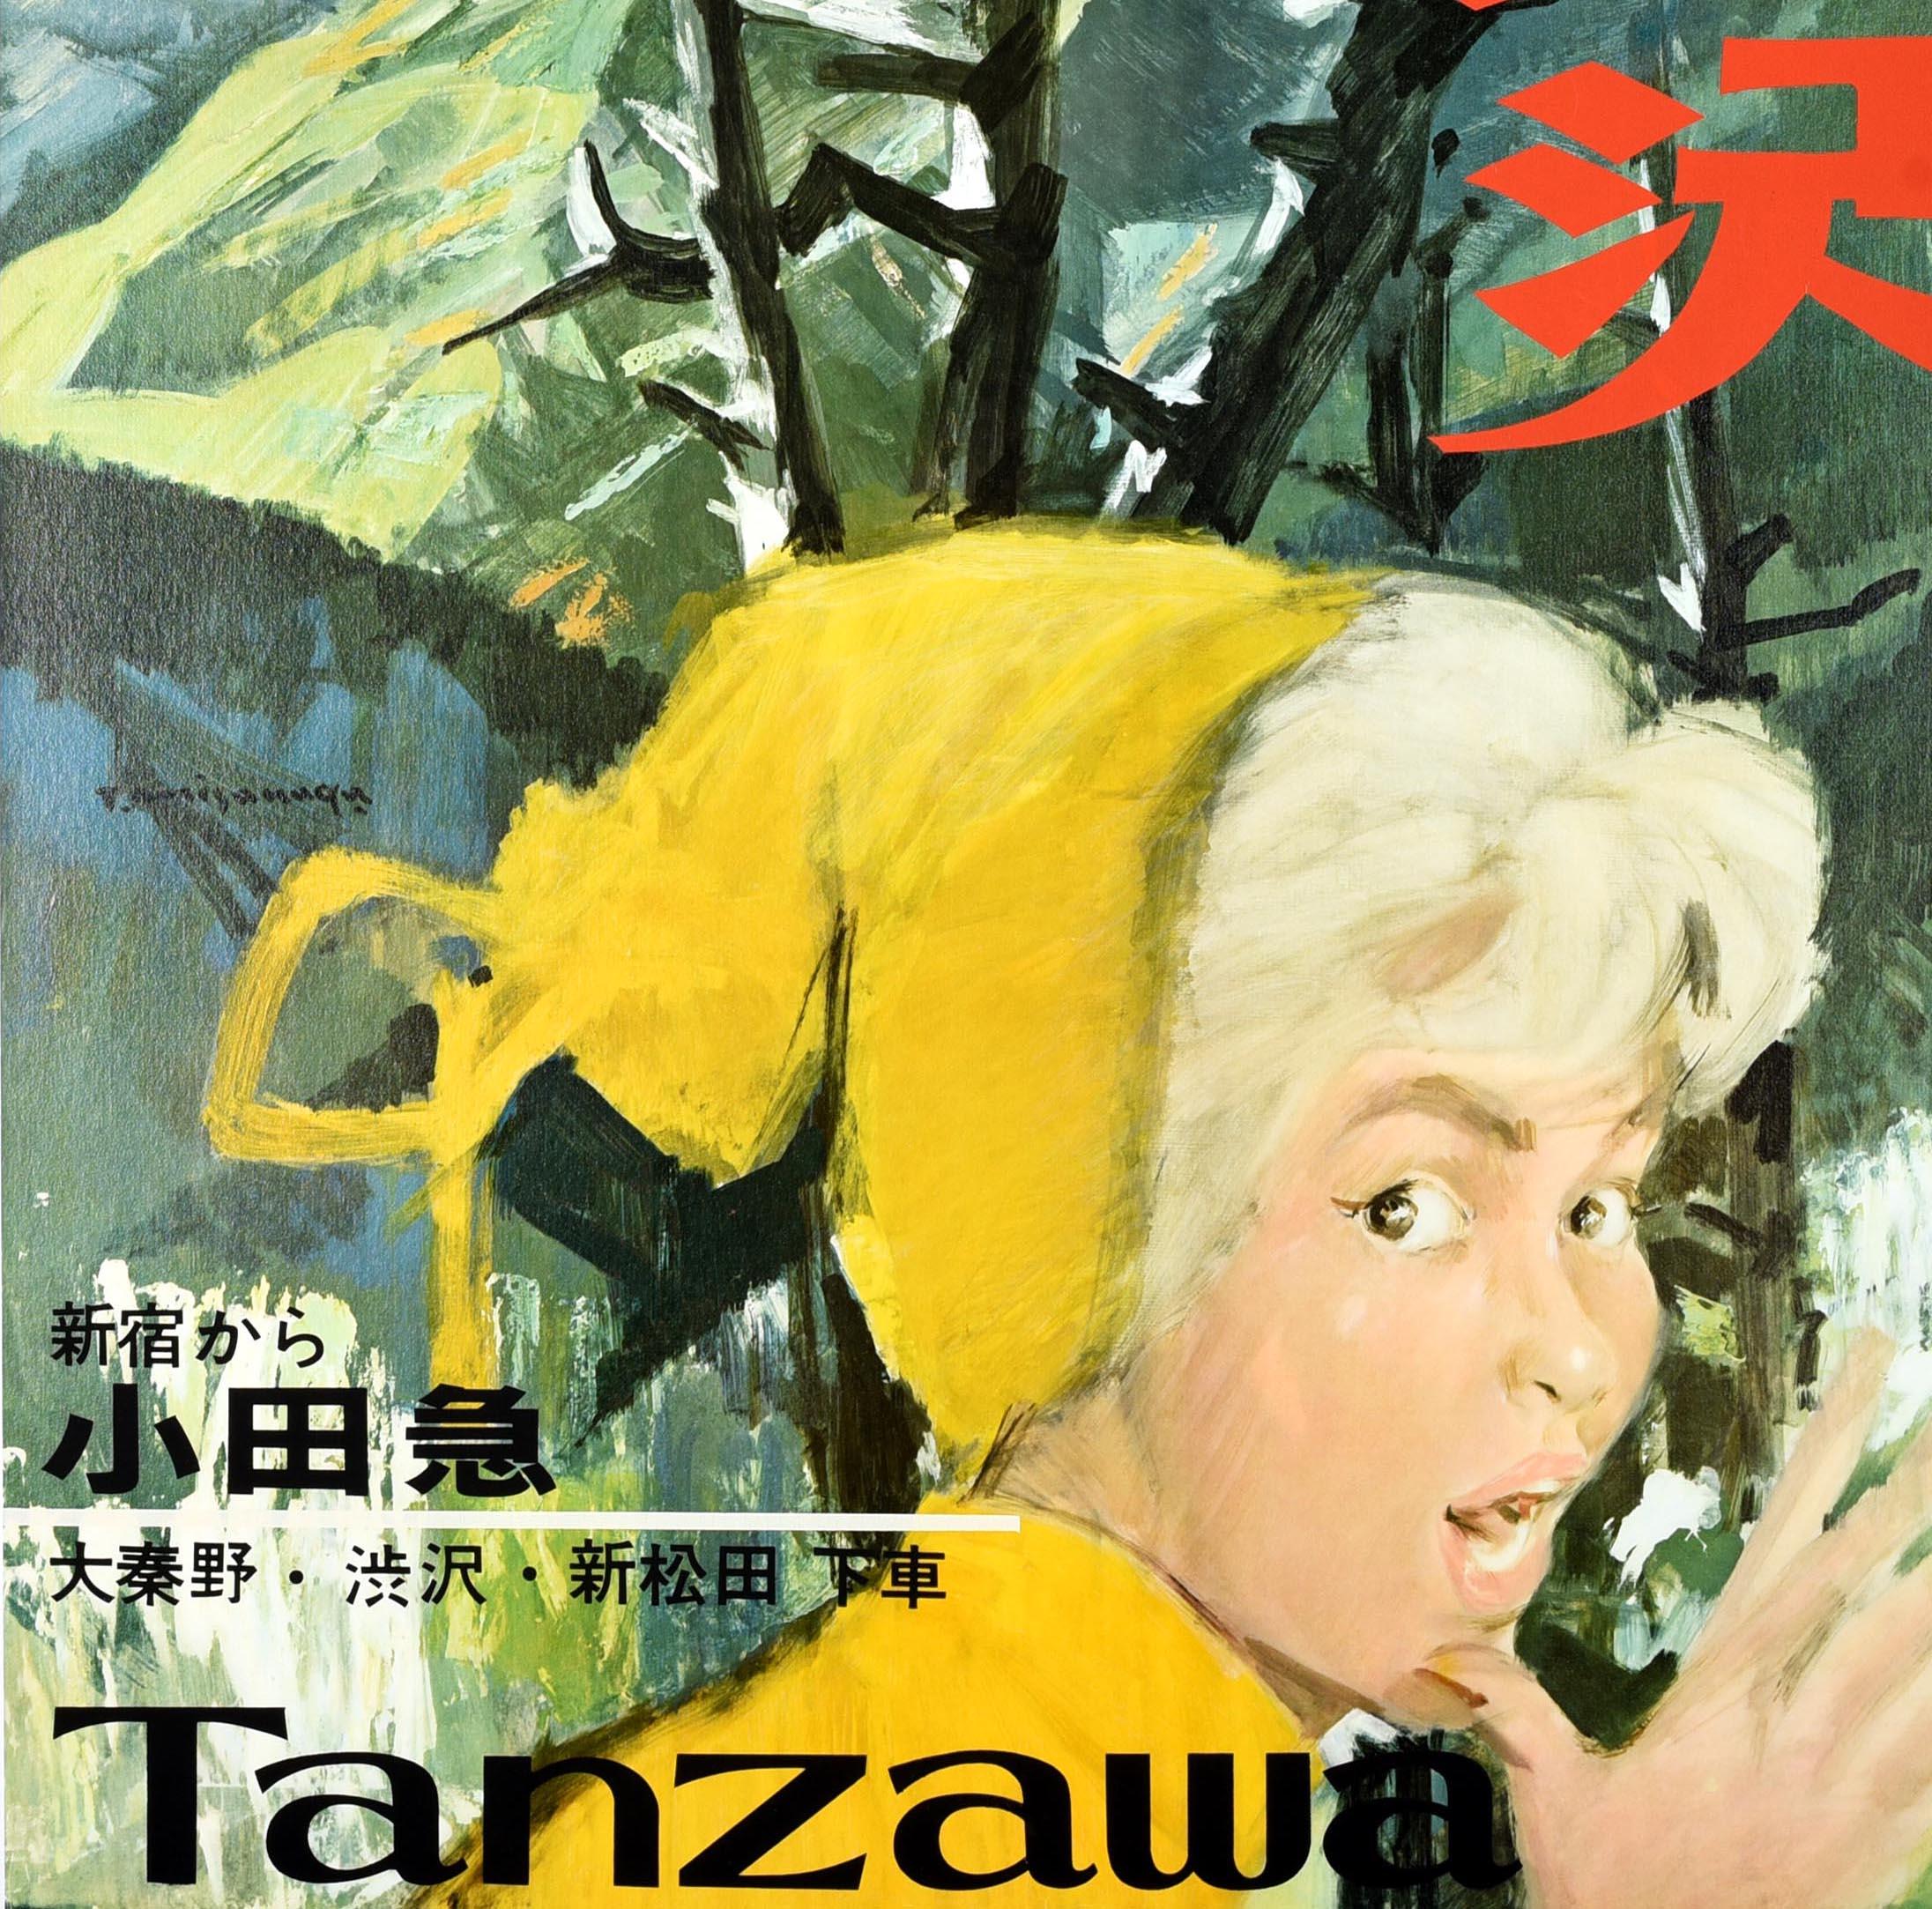 Original Vintage-Reiseplakat für den Tanzawa Mountains National Park in der Kanto-Region Japans - Von Shinjuku nach Odakyu, Ausstieg in Hadano, Shibusawa und Shin-Matsuda - mit einer Dame, die den Betrachter überrascht anschaut, mit einem Baum und